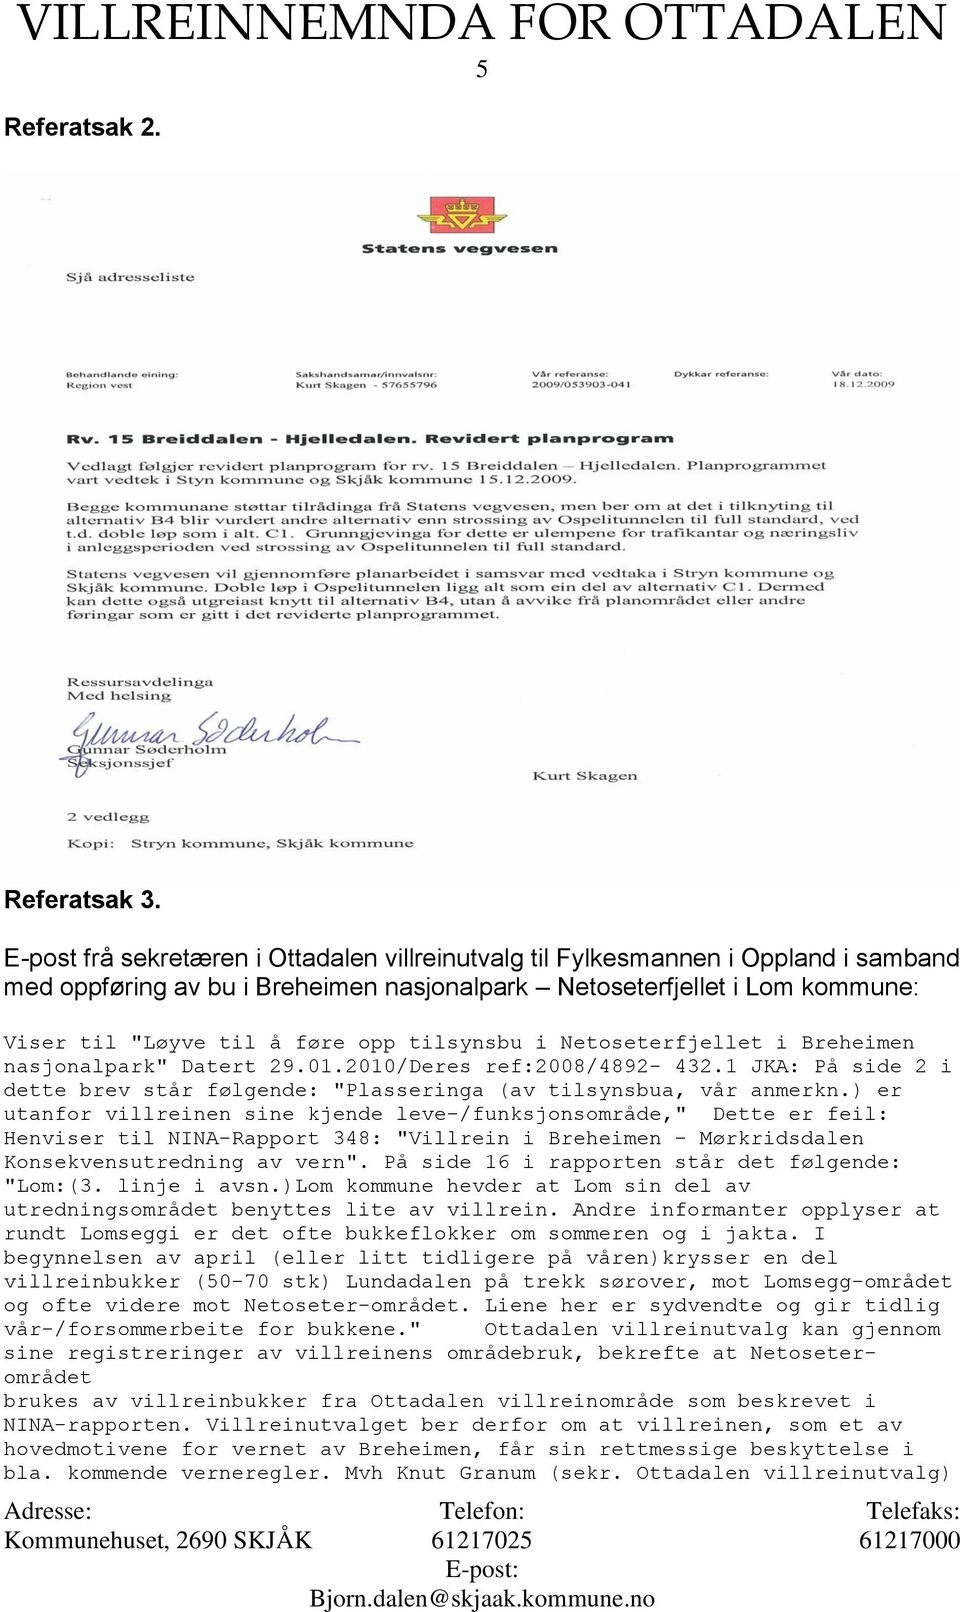 tilsynsbu i Netoseterfjellet i Breheimen nasjonalpark" Datert 29.01.2010/Deres ref:2008/4892-432.1 JKA: På side 2 i dette brev står følgende: "Plasseringa (av tilsynsbua, vår anmerkn.